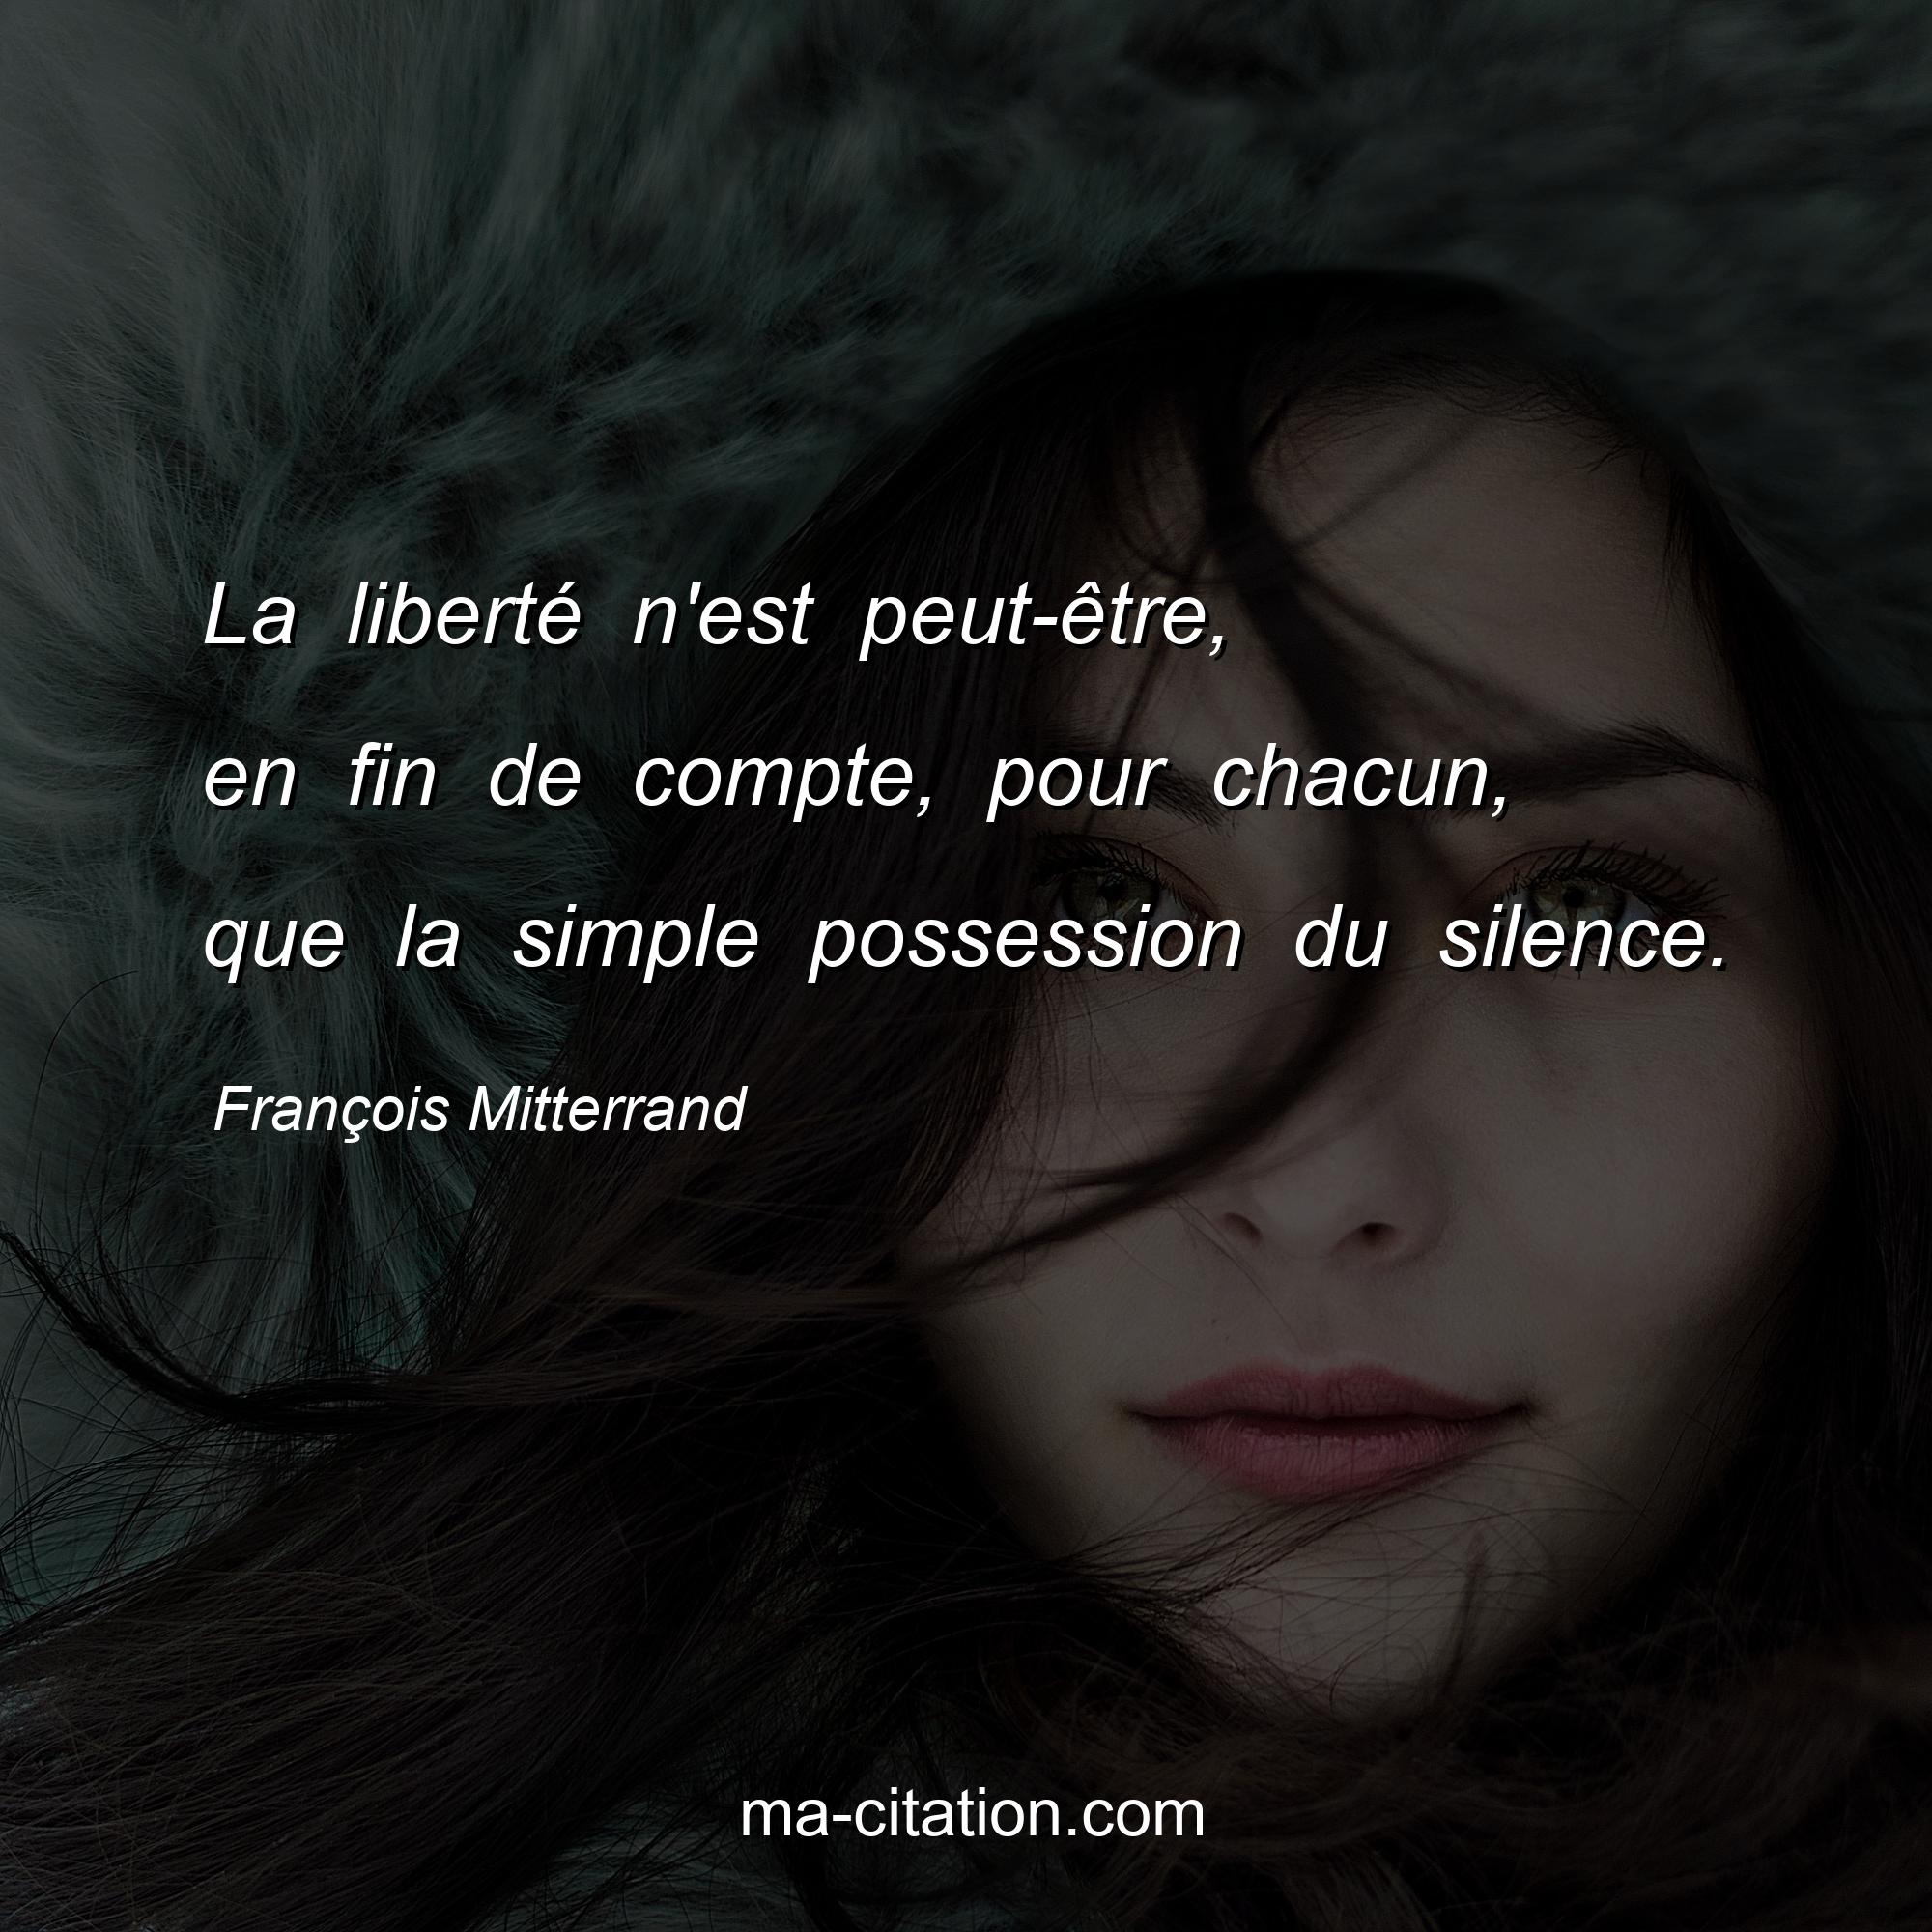 François Mitterrand : La liberté n'est peut-être, en fin de compte, pour chacun, que la simple possession du silence.